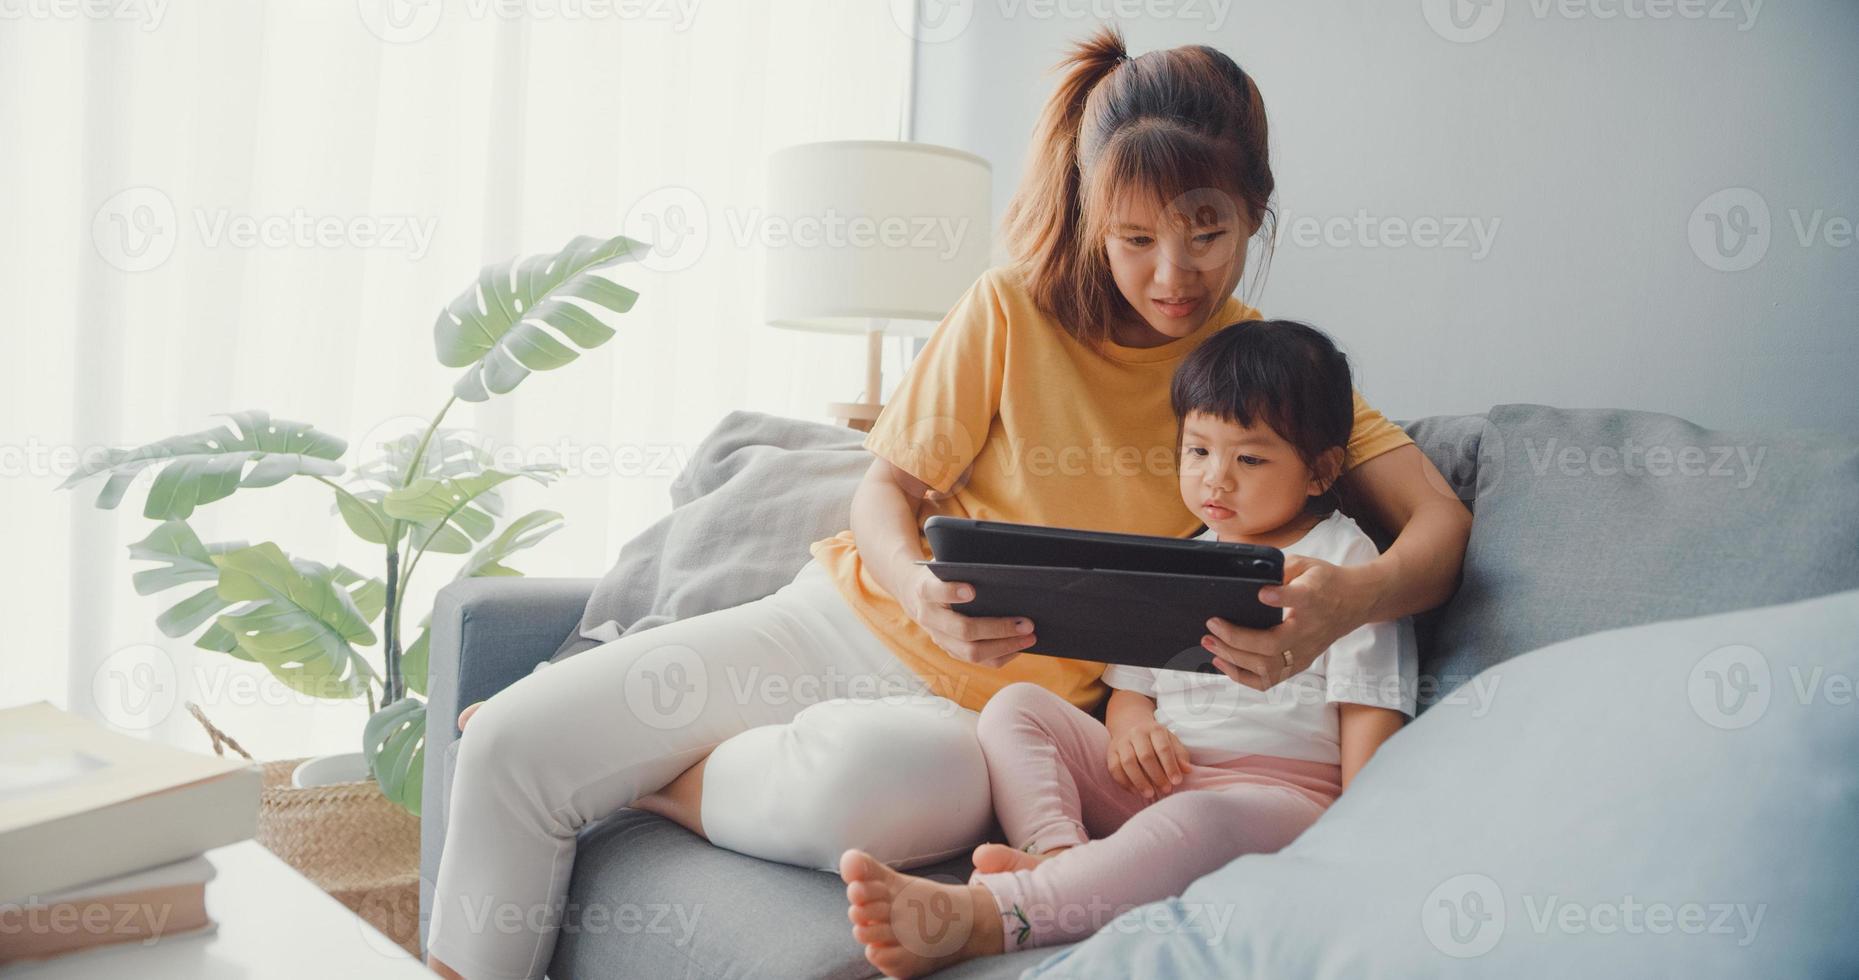 Joyeuse maman de famille asiatique joyeuse et enfant mignon utilisant un dessin animé d'intérêt pour tablette numérique et regarder un film s'amusant se détendre sur le canapé dans le salon de la maison. passer du temps ensemble, mettre en quarantaine pour le coronavirus. photo